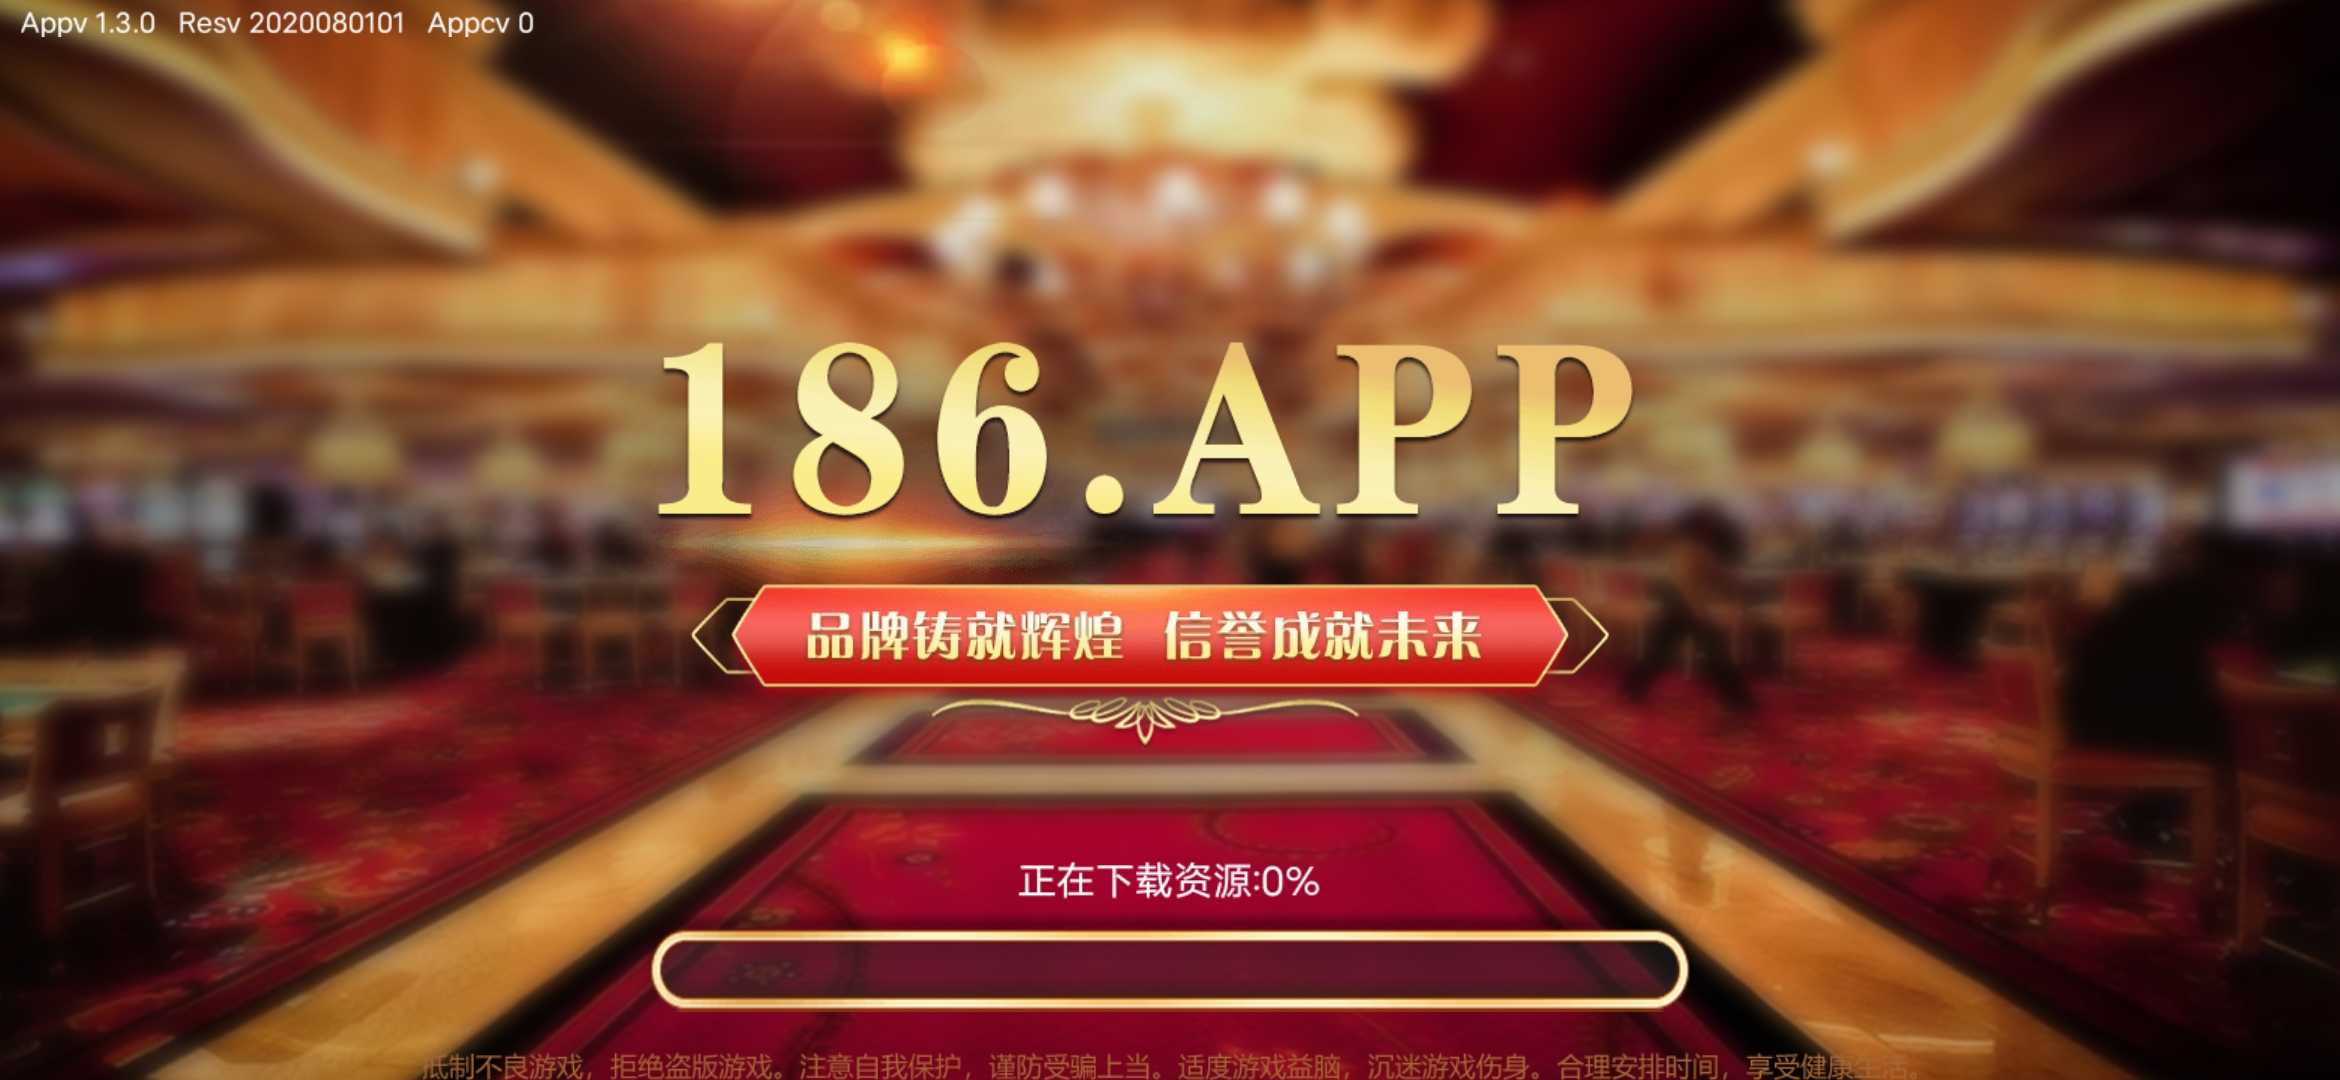 186.app